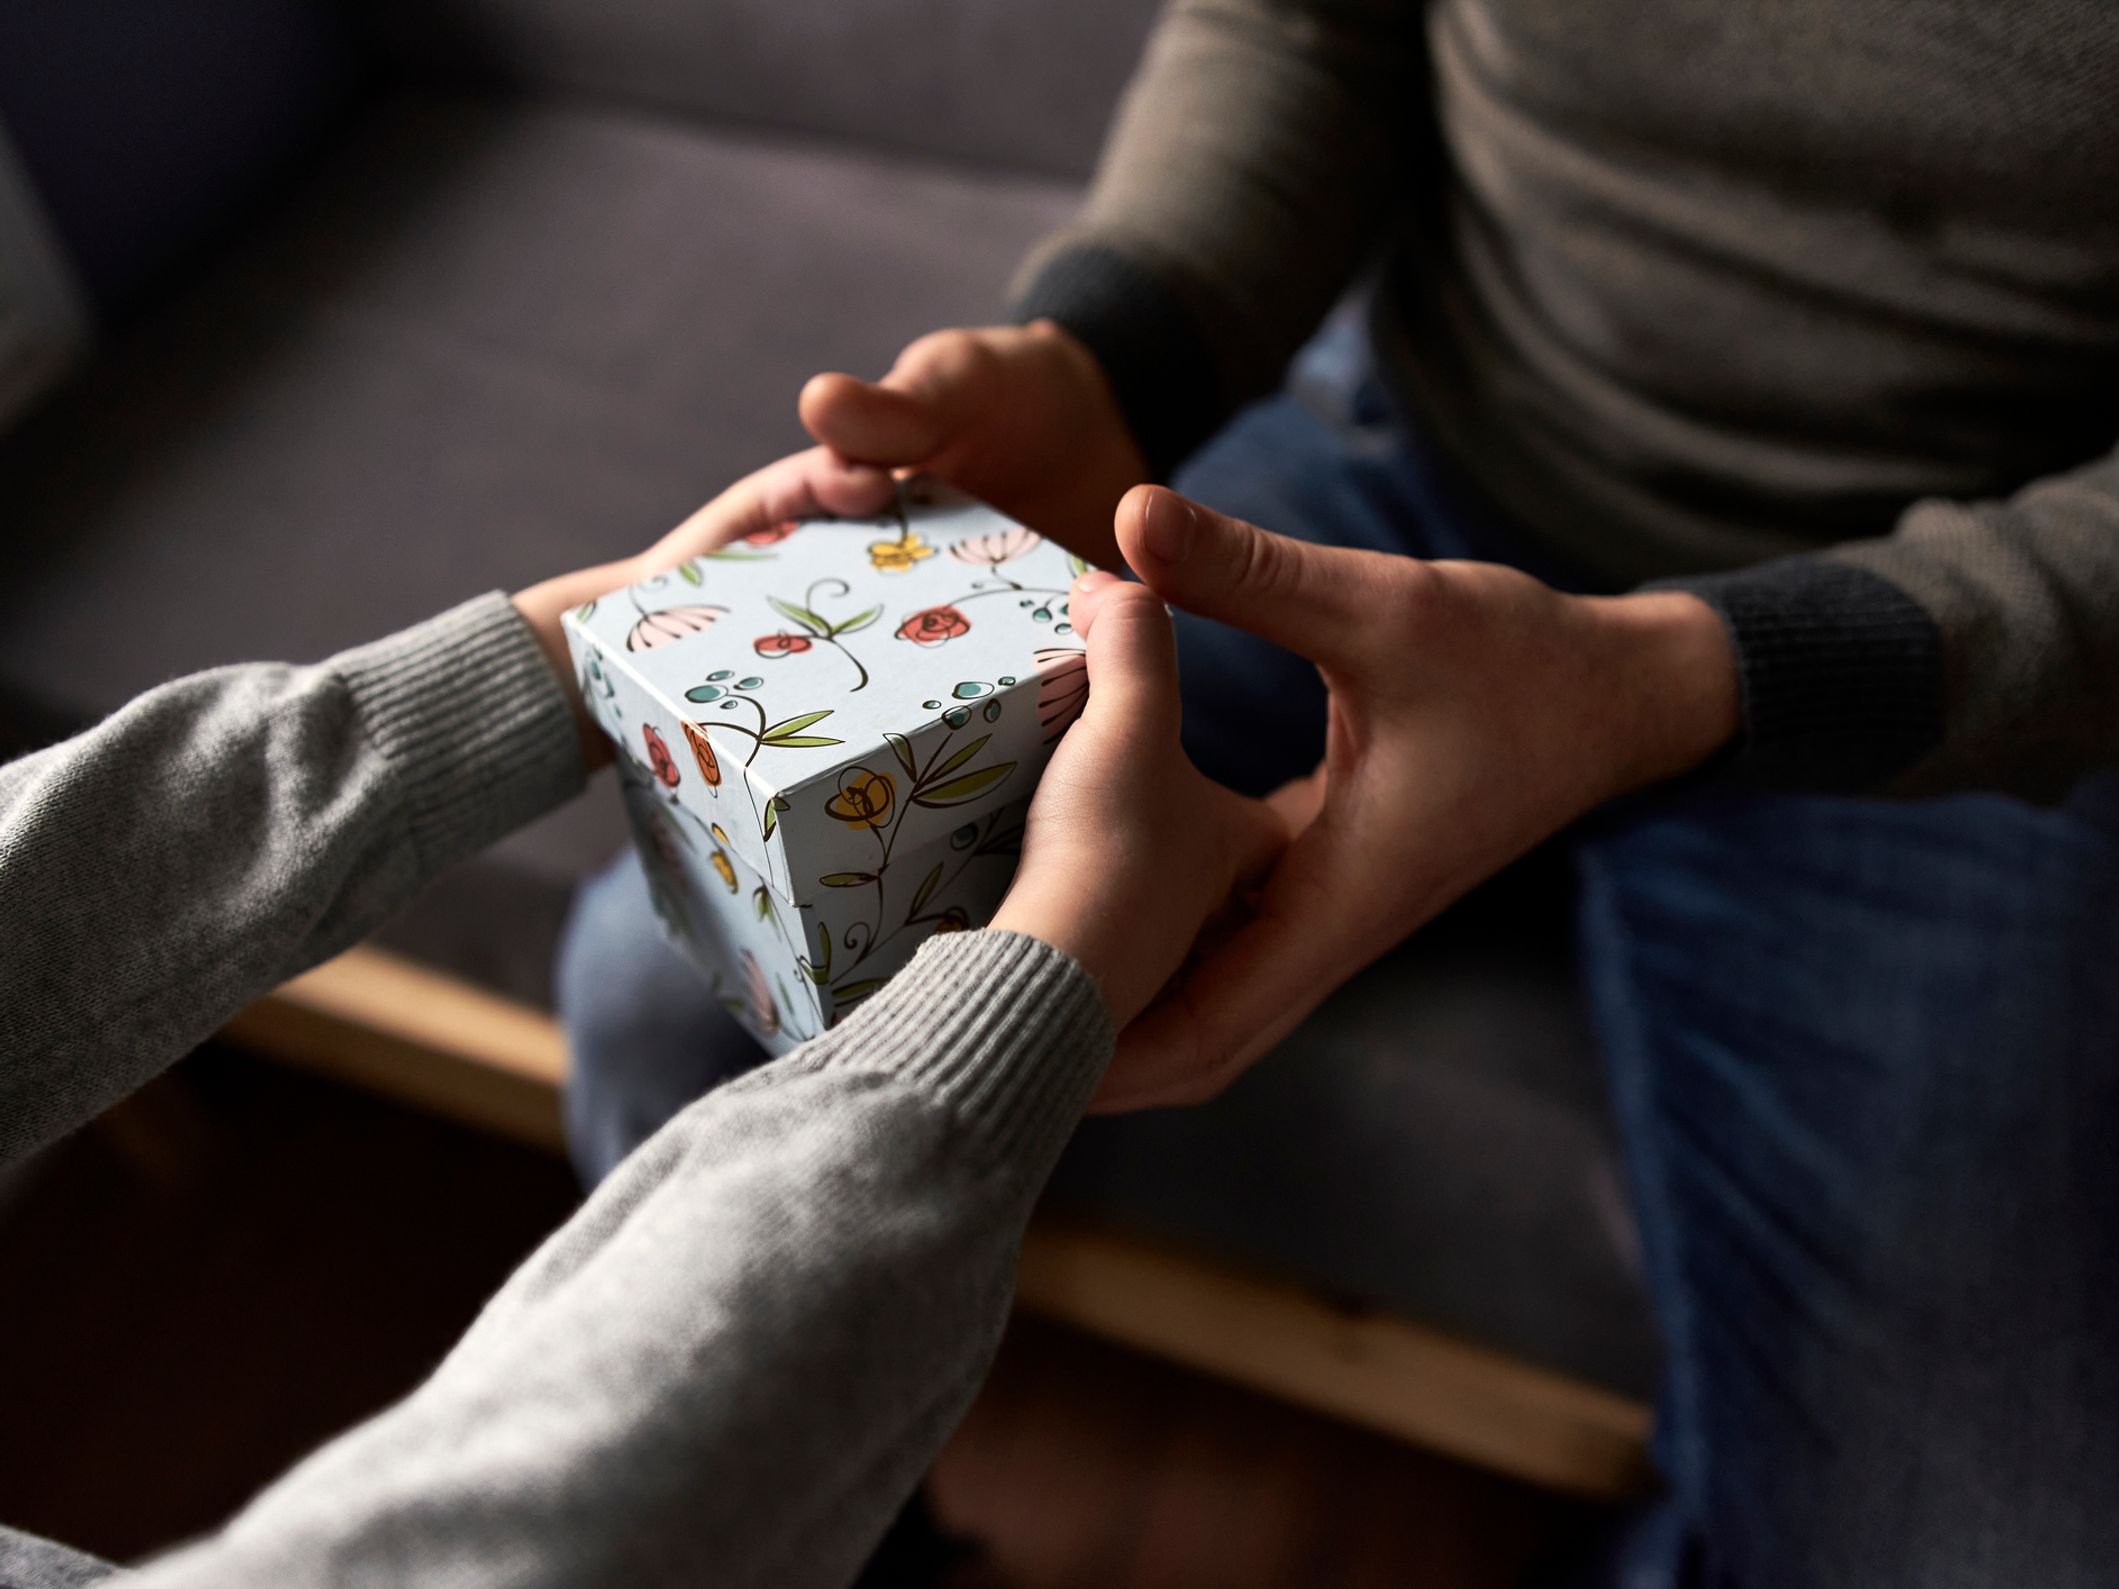 Les meilleures idées de cadeaux pour 1 an de relation - Nos conseils  pratiques